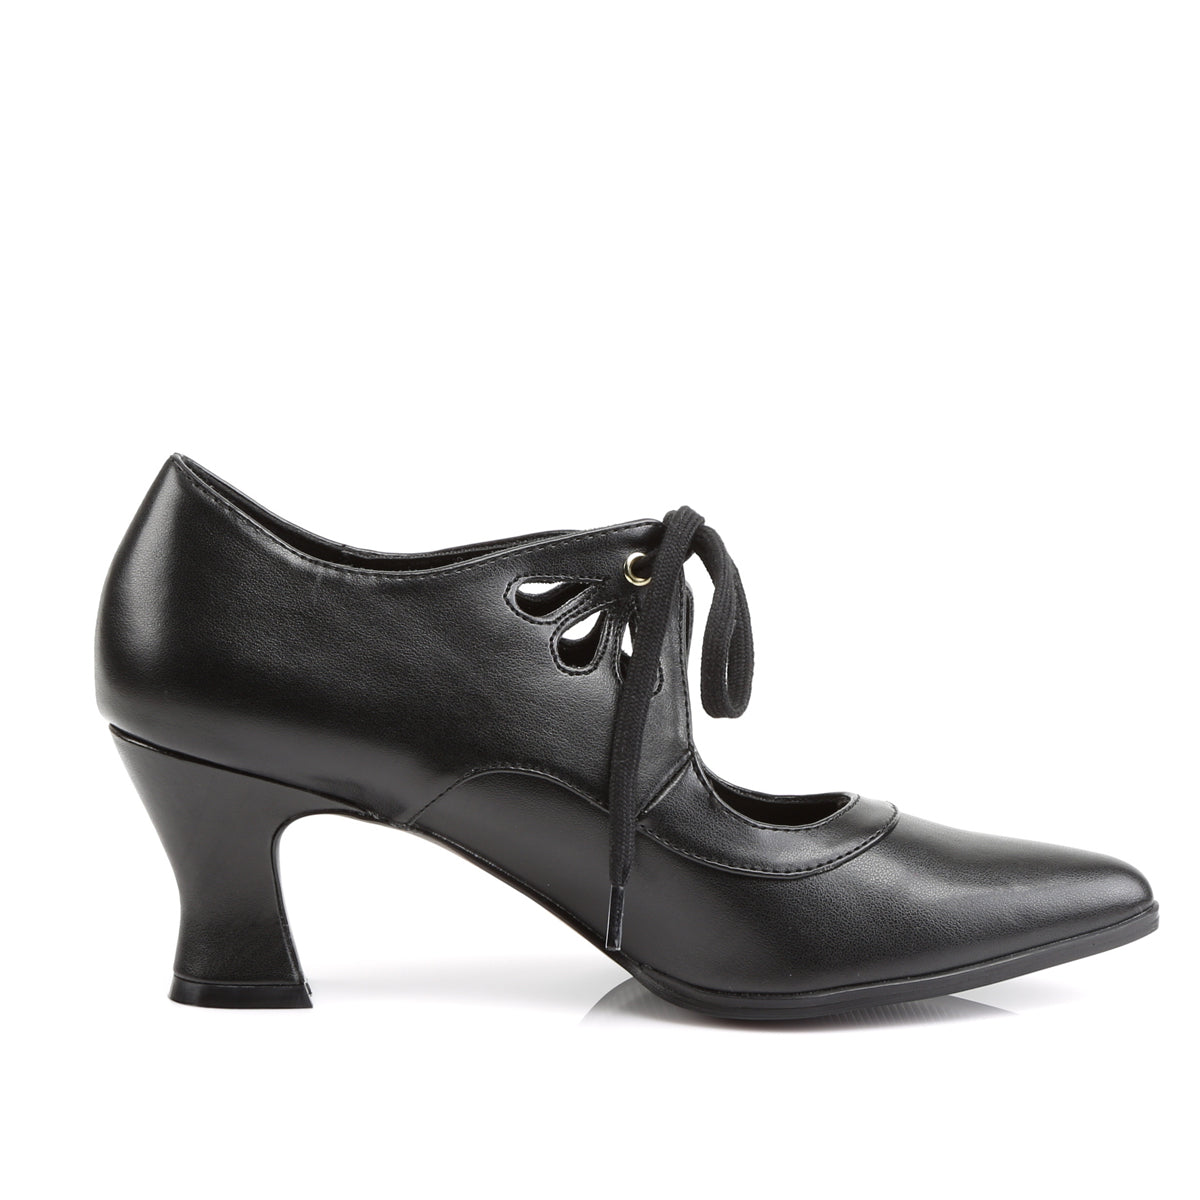 VICTORIAN-03 Funtasma Fantasy Black Pu Women's Shoes [Fancy Dress Footwear]